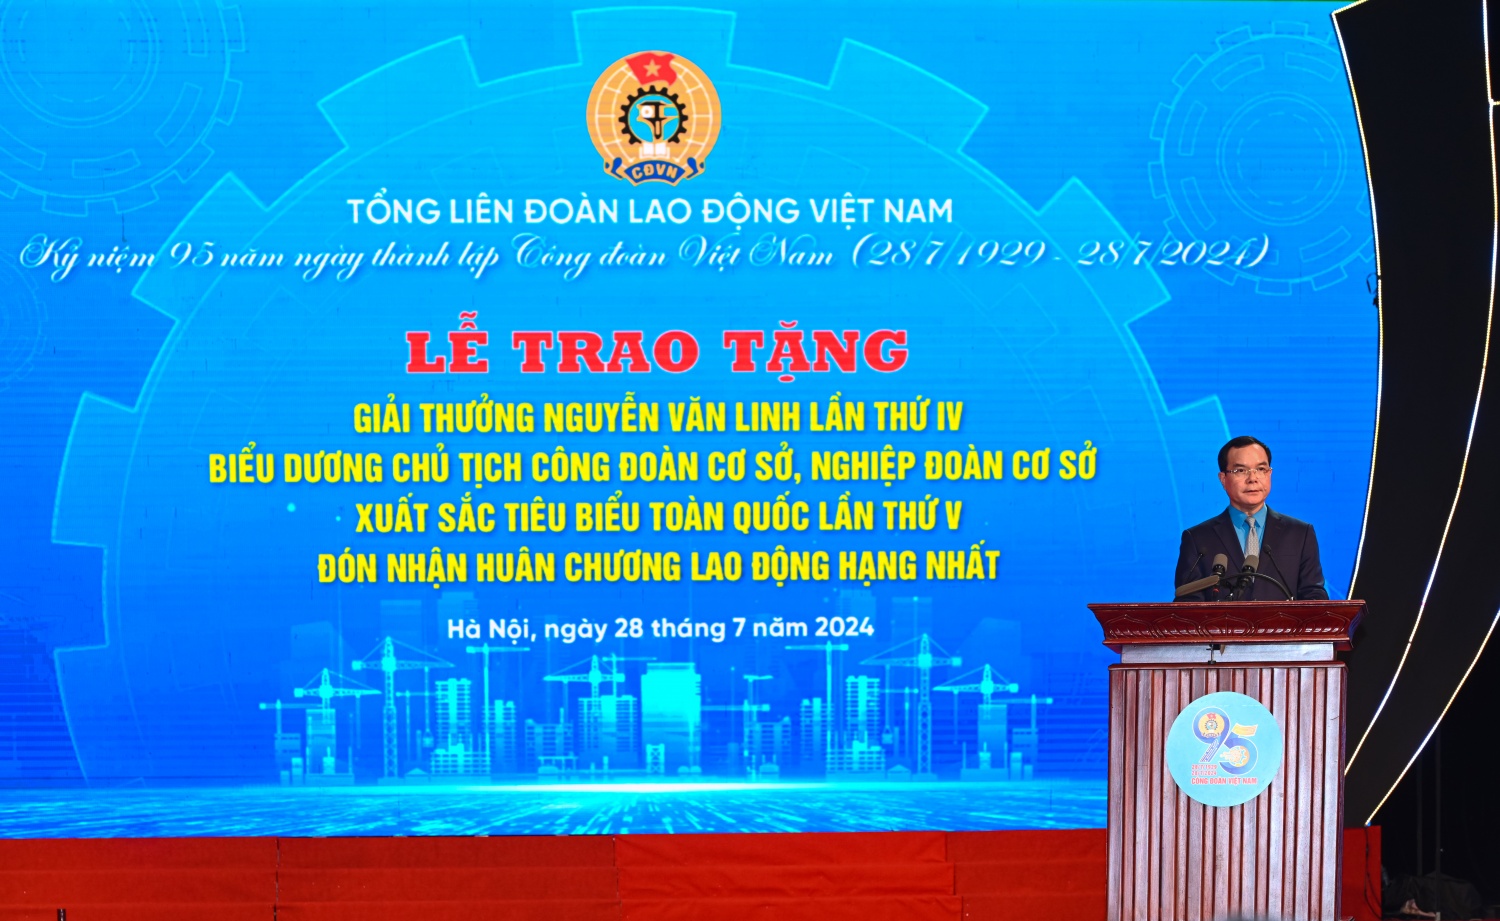 Chủ tịch Tổng Liên đoàn Lao động Việt Nam Nguyễn Đình Khang phát biểu tại buổi lễ.